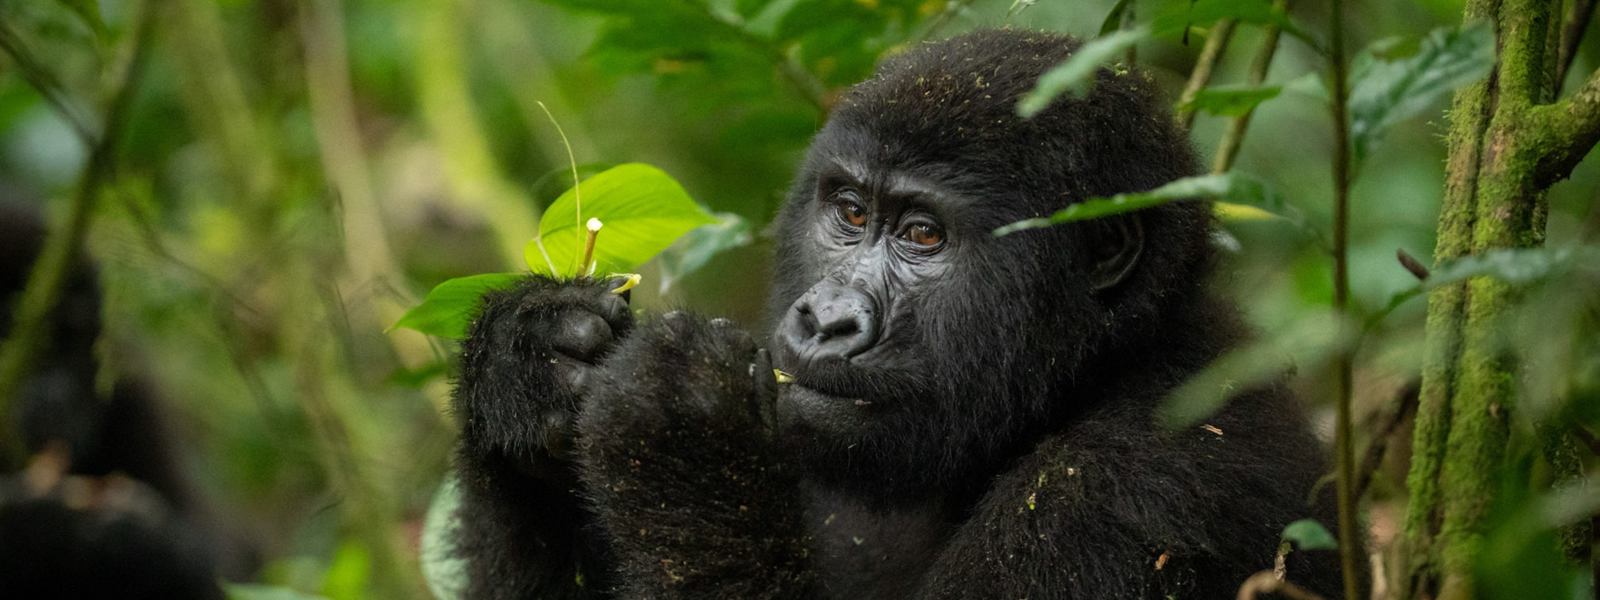 Gorilla Safari and Wildlife in Uganda-15 Days